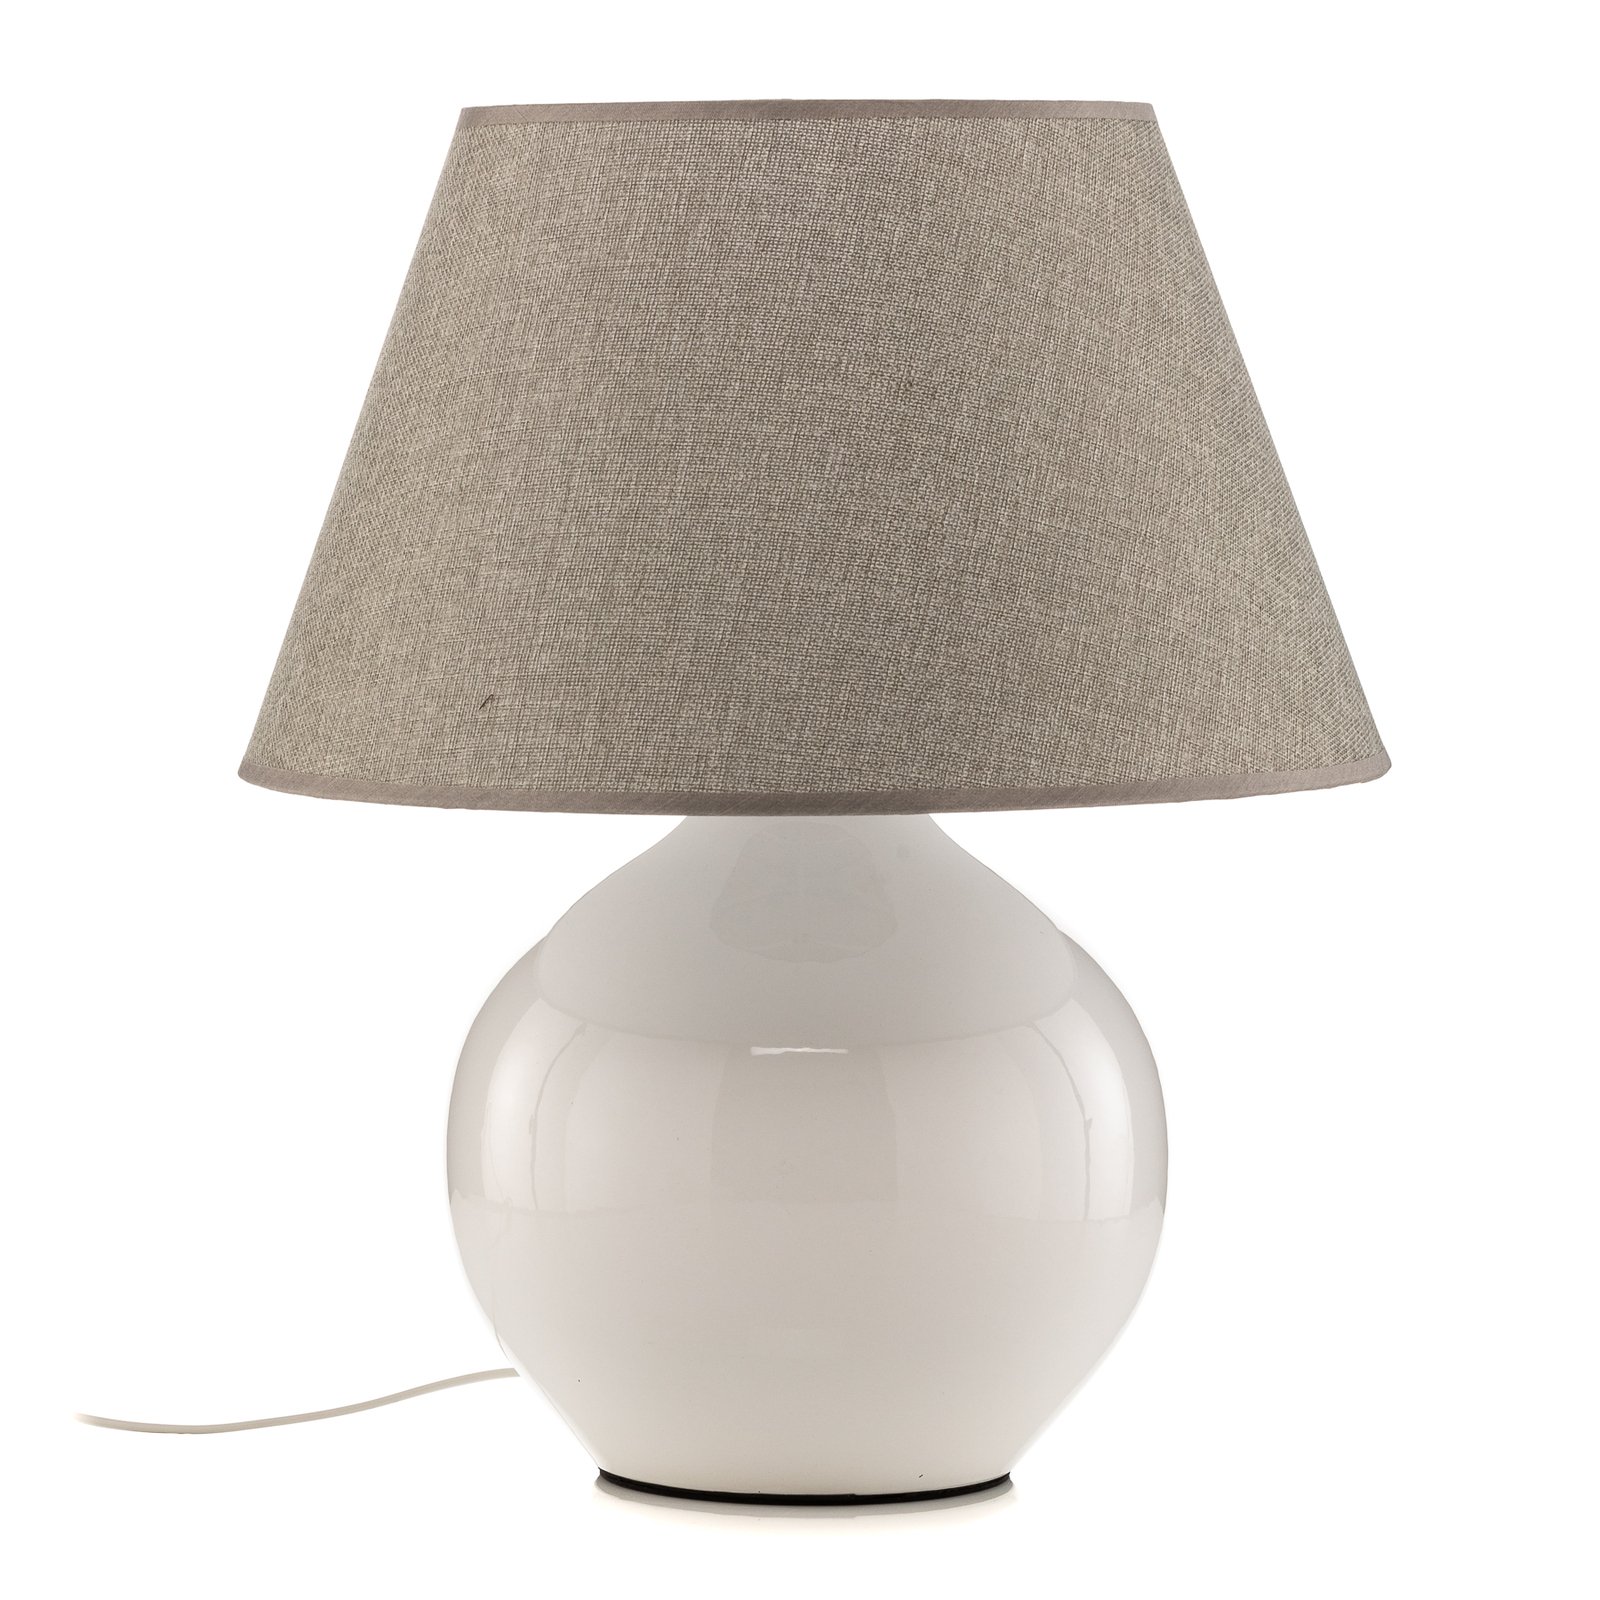 Stolní lampa Sfera, výška 53 cm, bílá/šedá